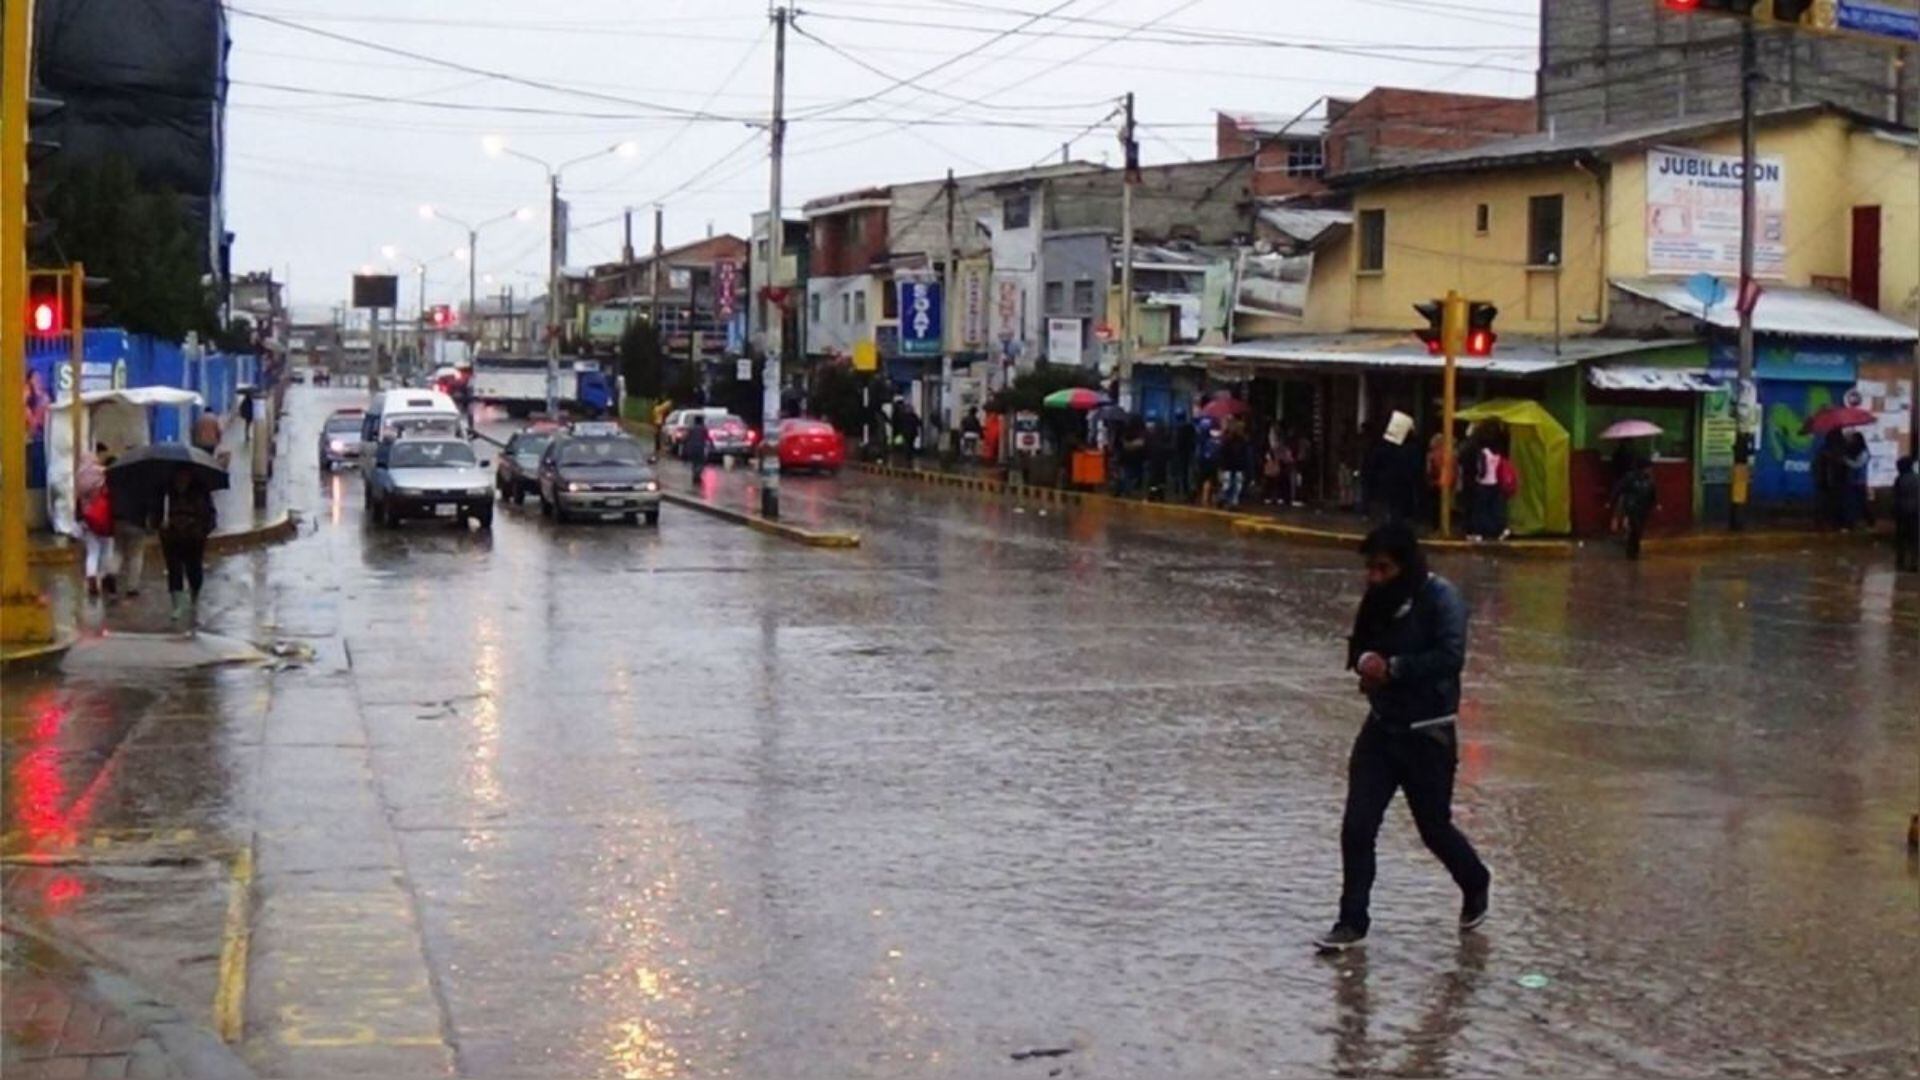 El Servicio Nacional de Meteorología e Hidrología del Perú (Senamhi) anticipa lluvias moderadas y fuertes para los días 14 y 15 de noviembre. En total, 81 distritos se encuentran en una situación de riesgo muy alto, mientras que otros 100 distritos están en riesgo alto.